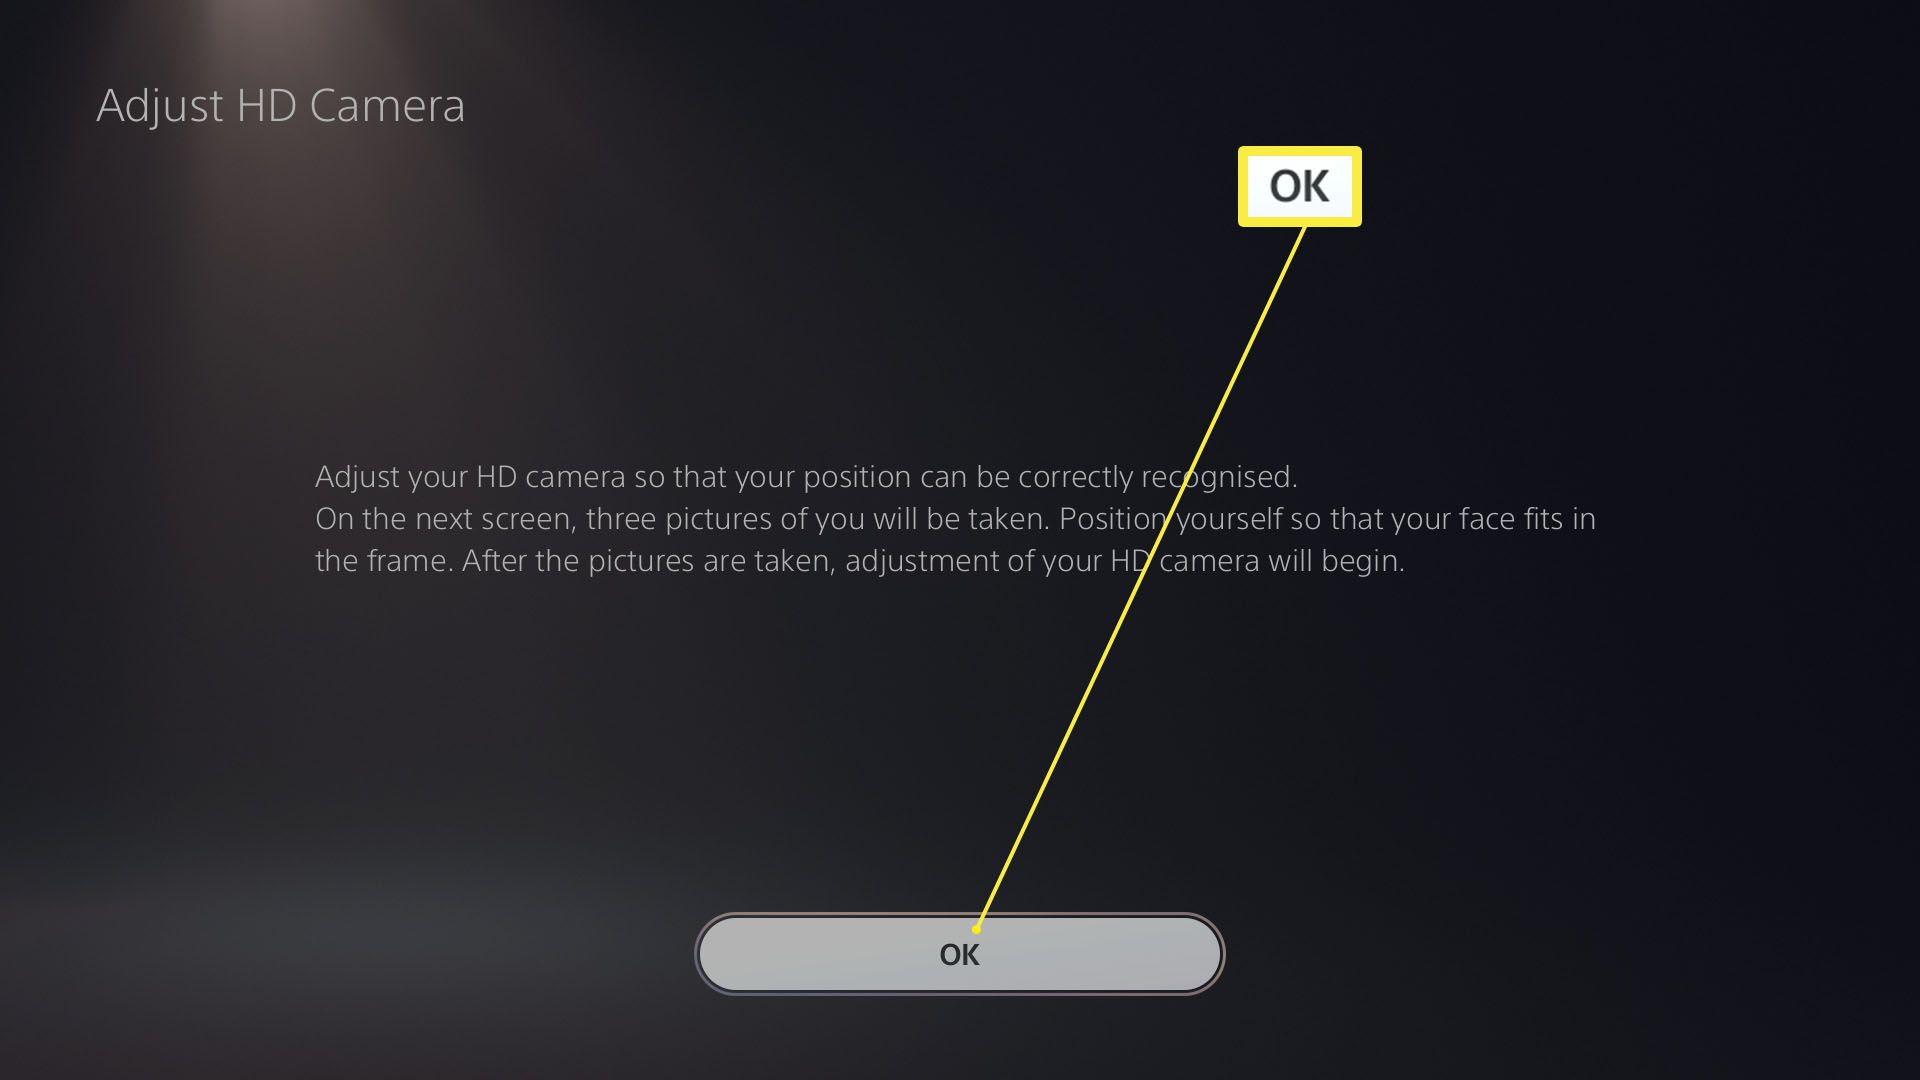 PlayStation 5 Justera HD-kamerainställningarna med OK-knappen markerad